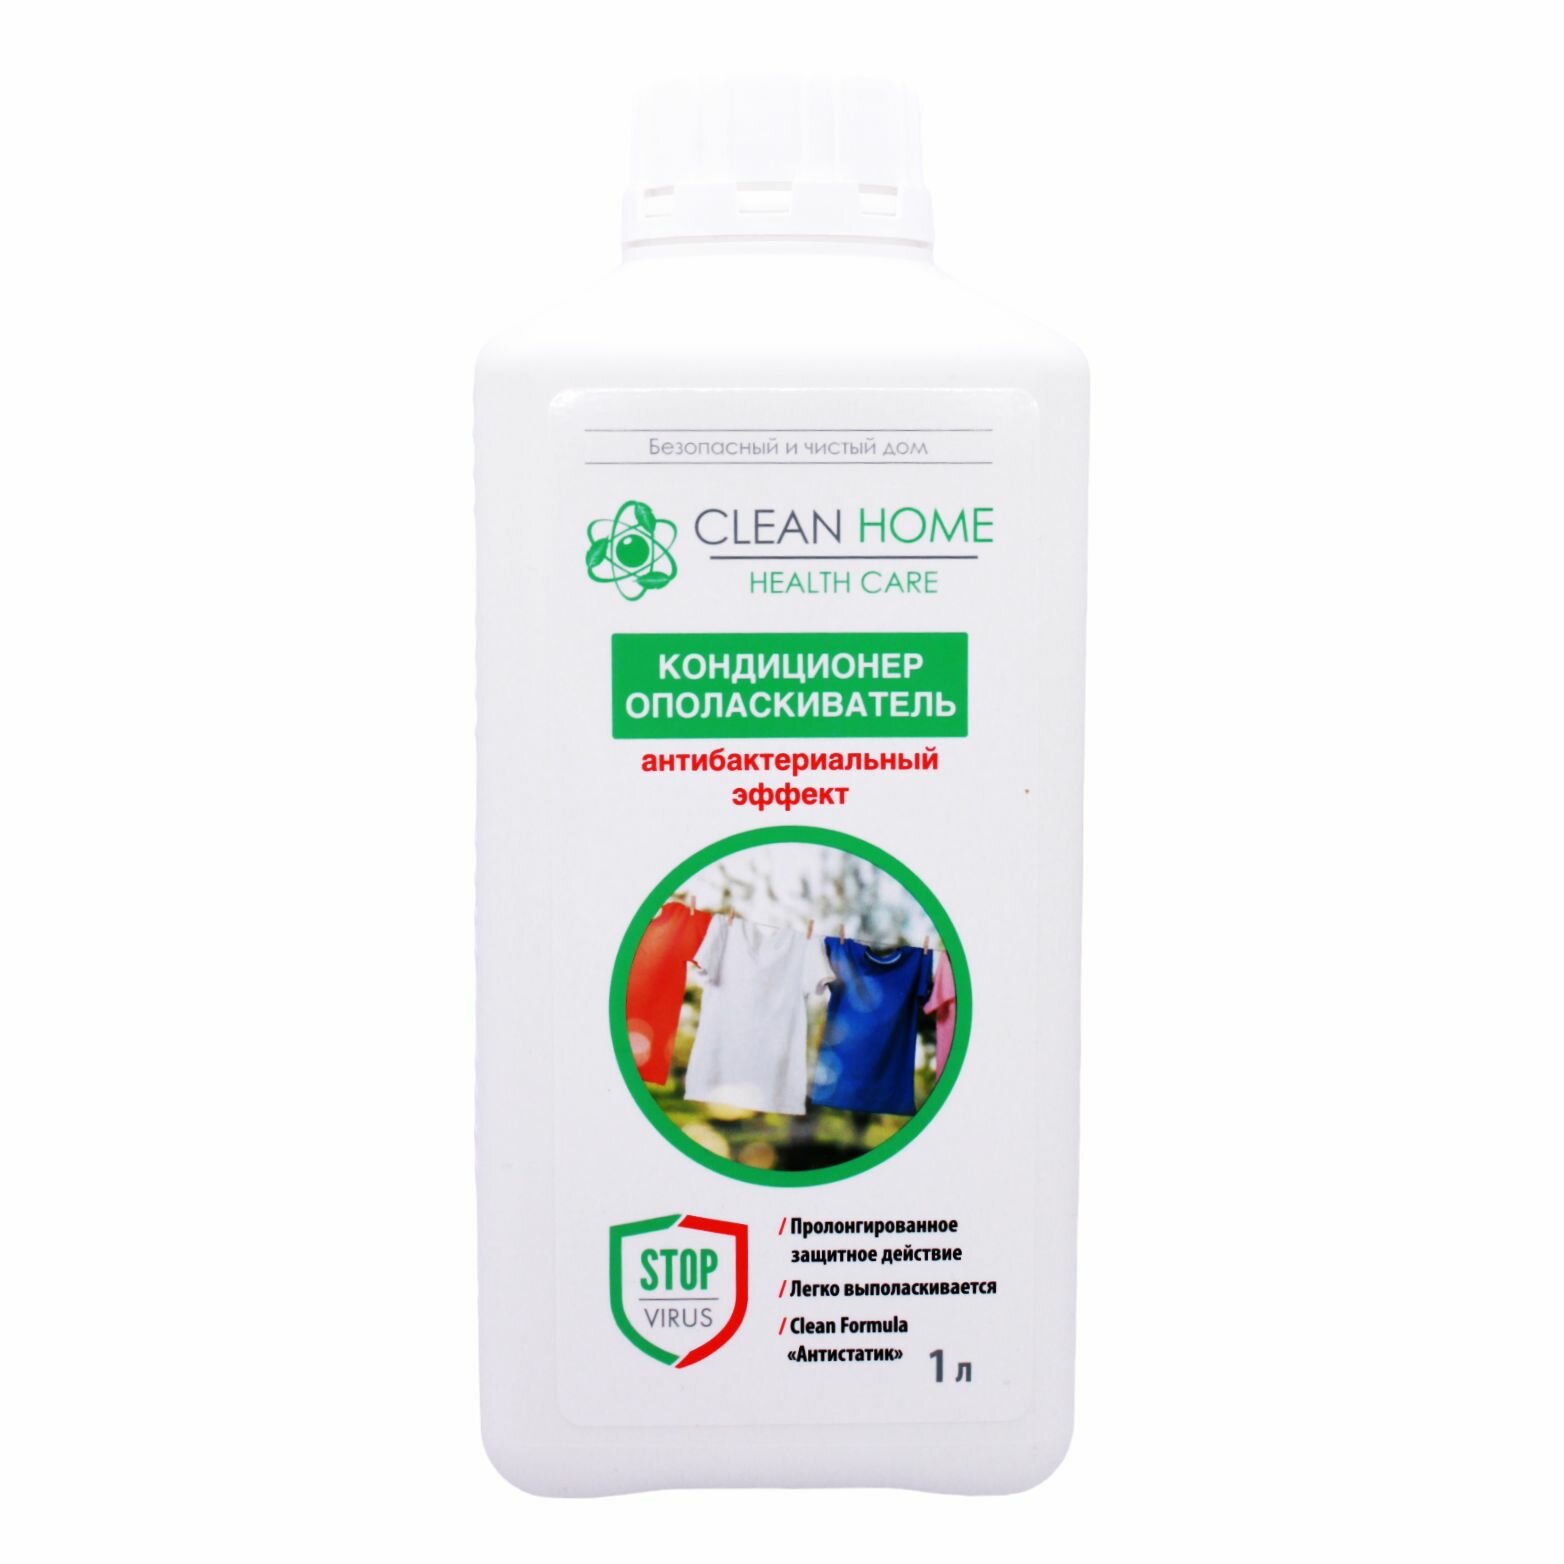 Clean Home Кондиционер ополаскиватель Антибактериальный эффект 1л